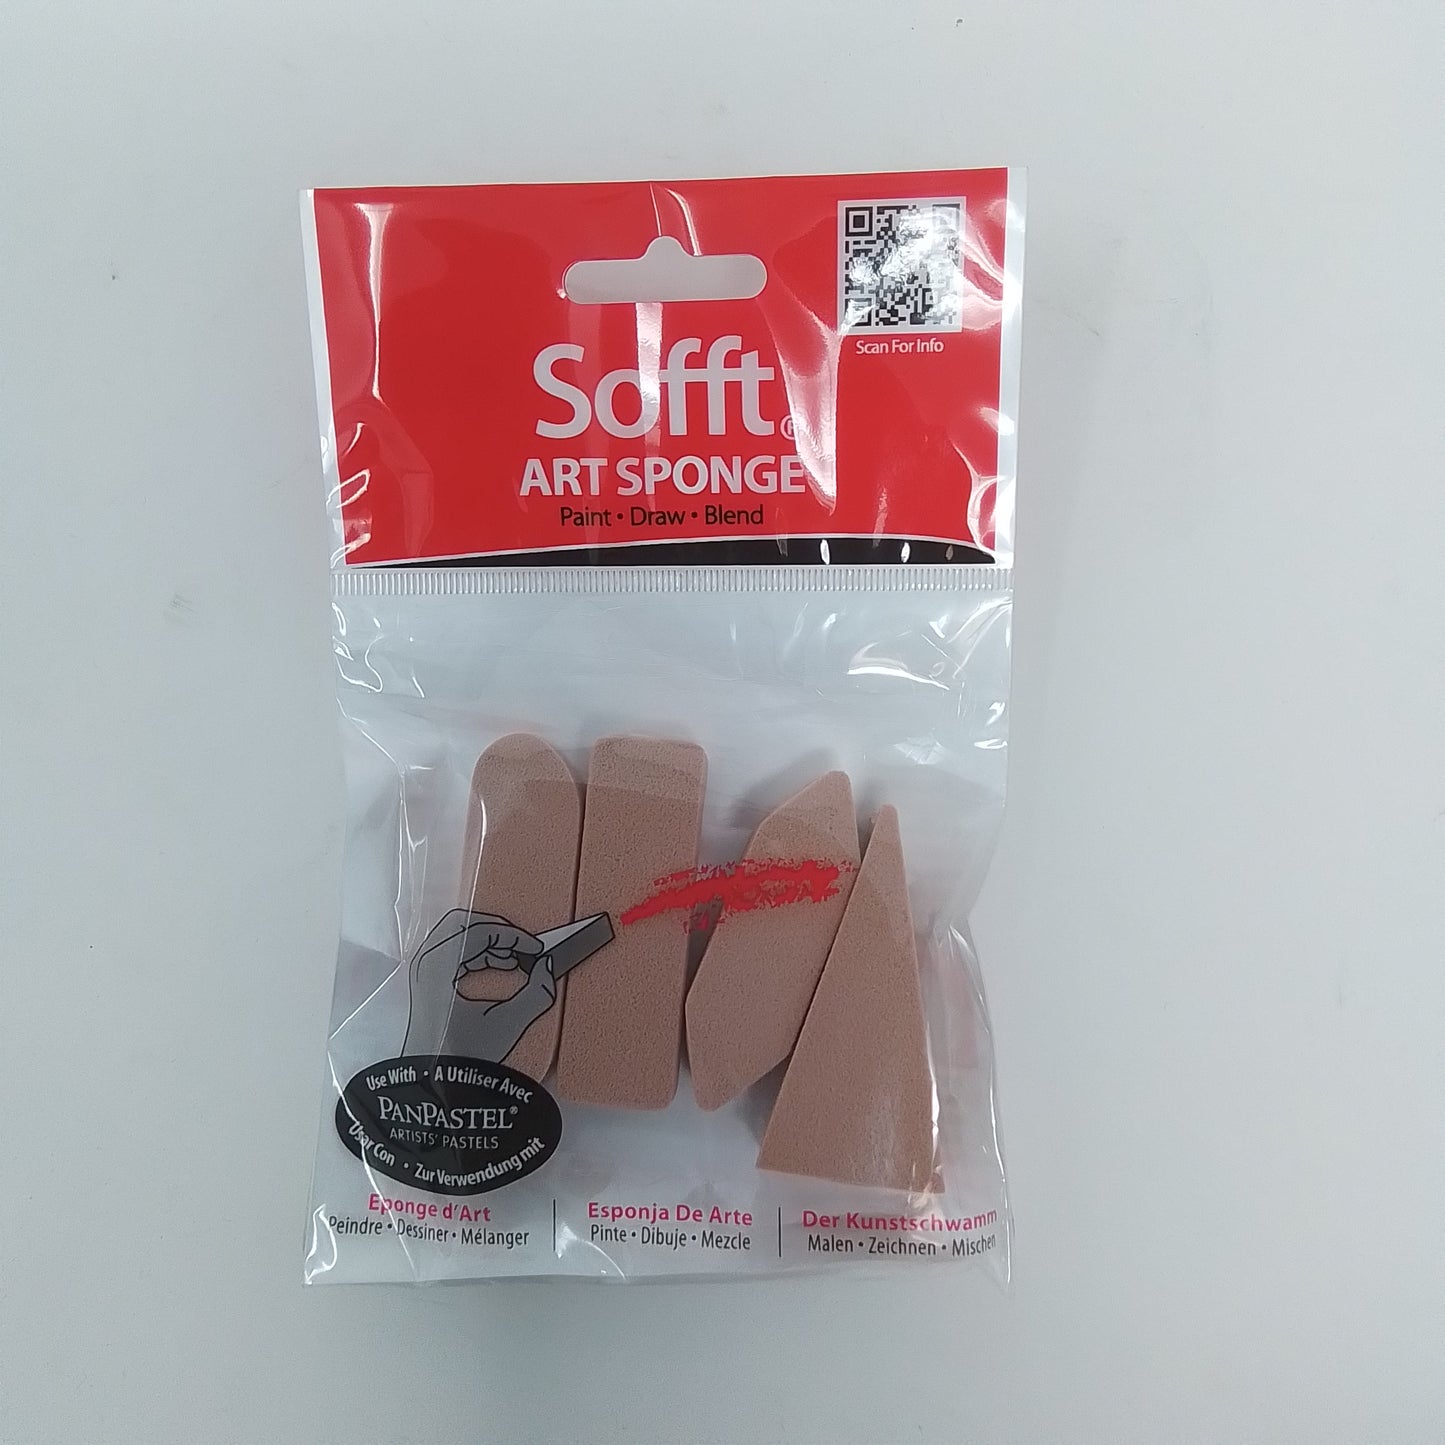 Sofft - Art Sponge